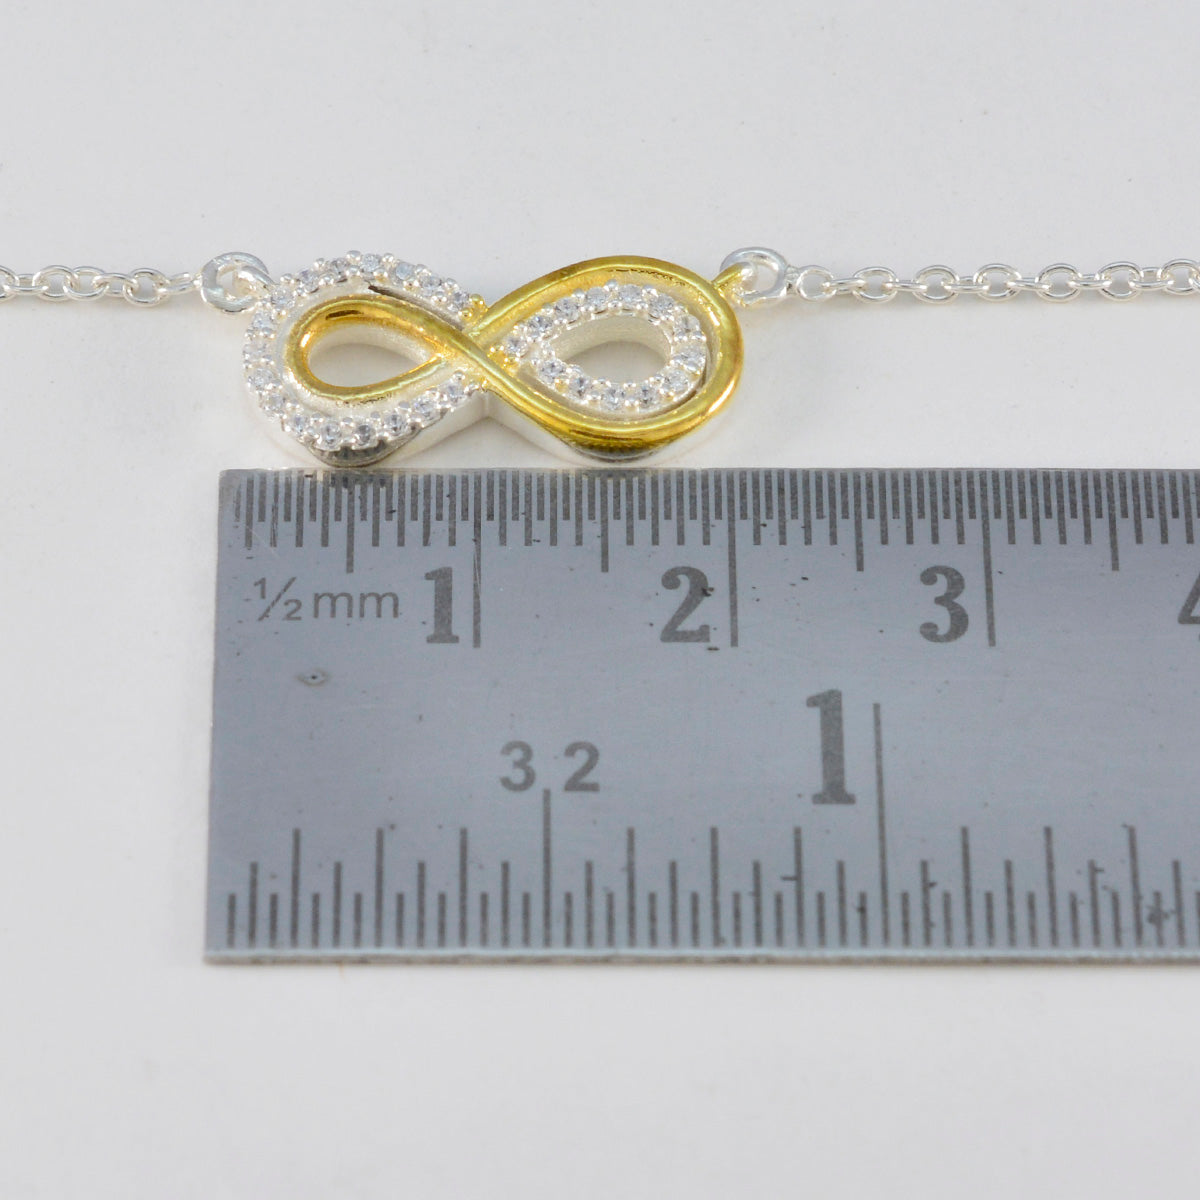 Riyo innemende edelsteen ronde gefacetteerde witte witte cz sterling zilveren hanger cadeau voor vrouwen